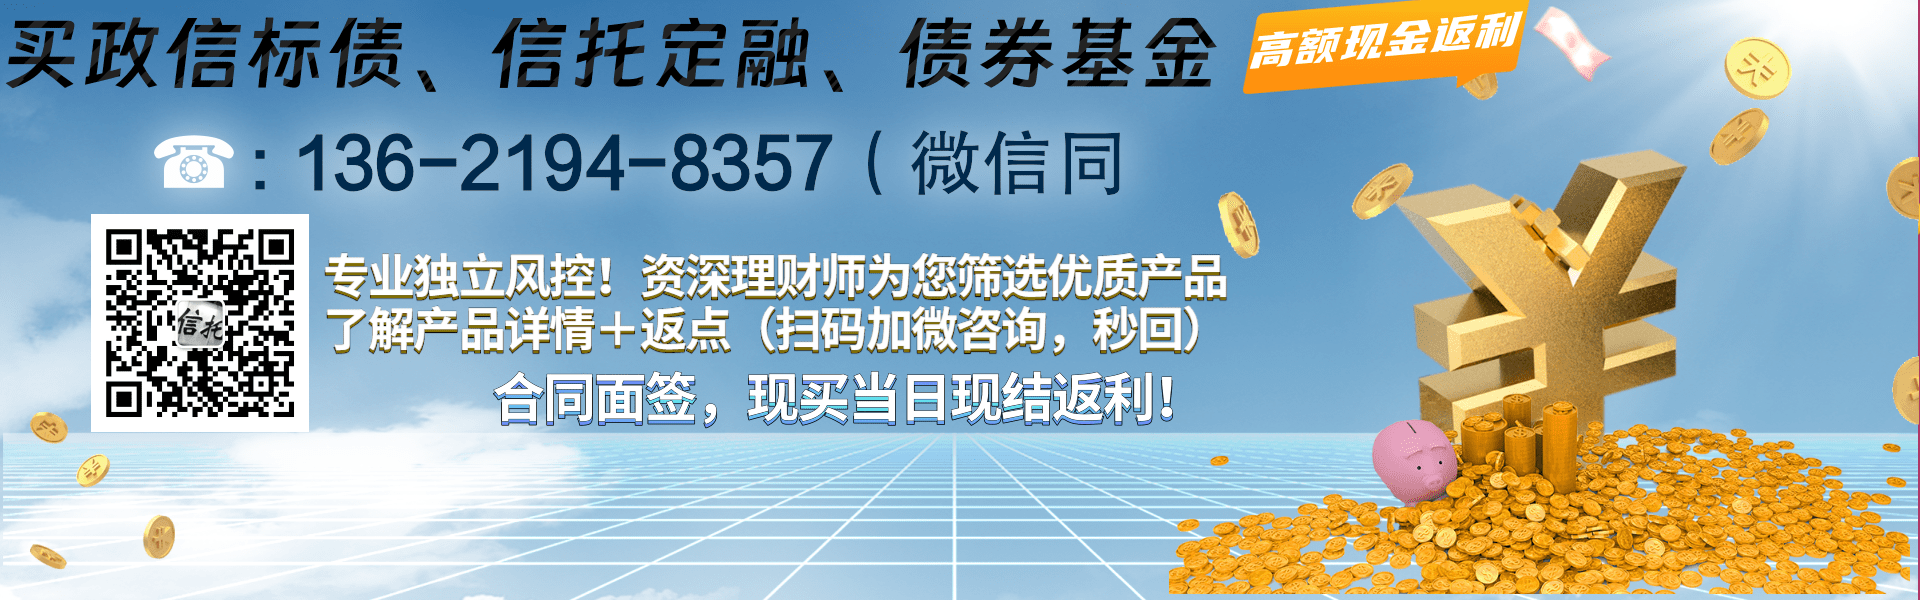 鱼台鑫达投资2022年政府债定融